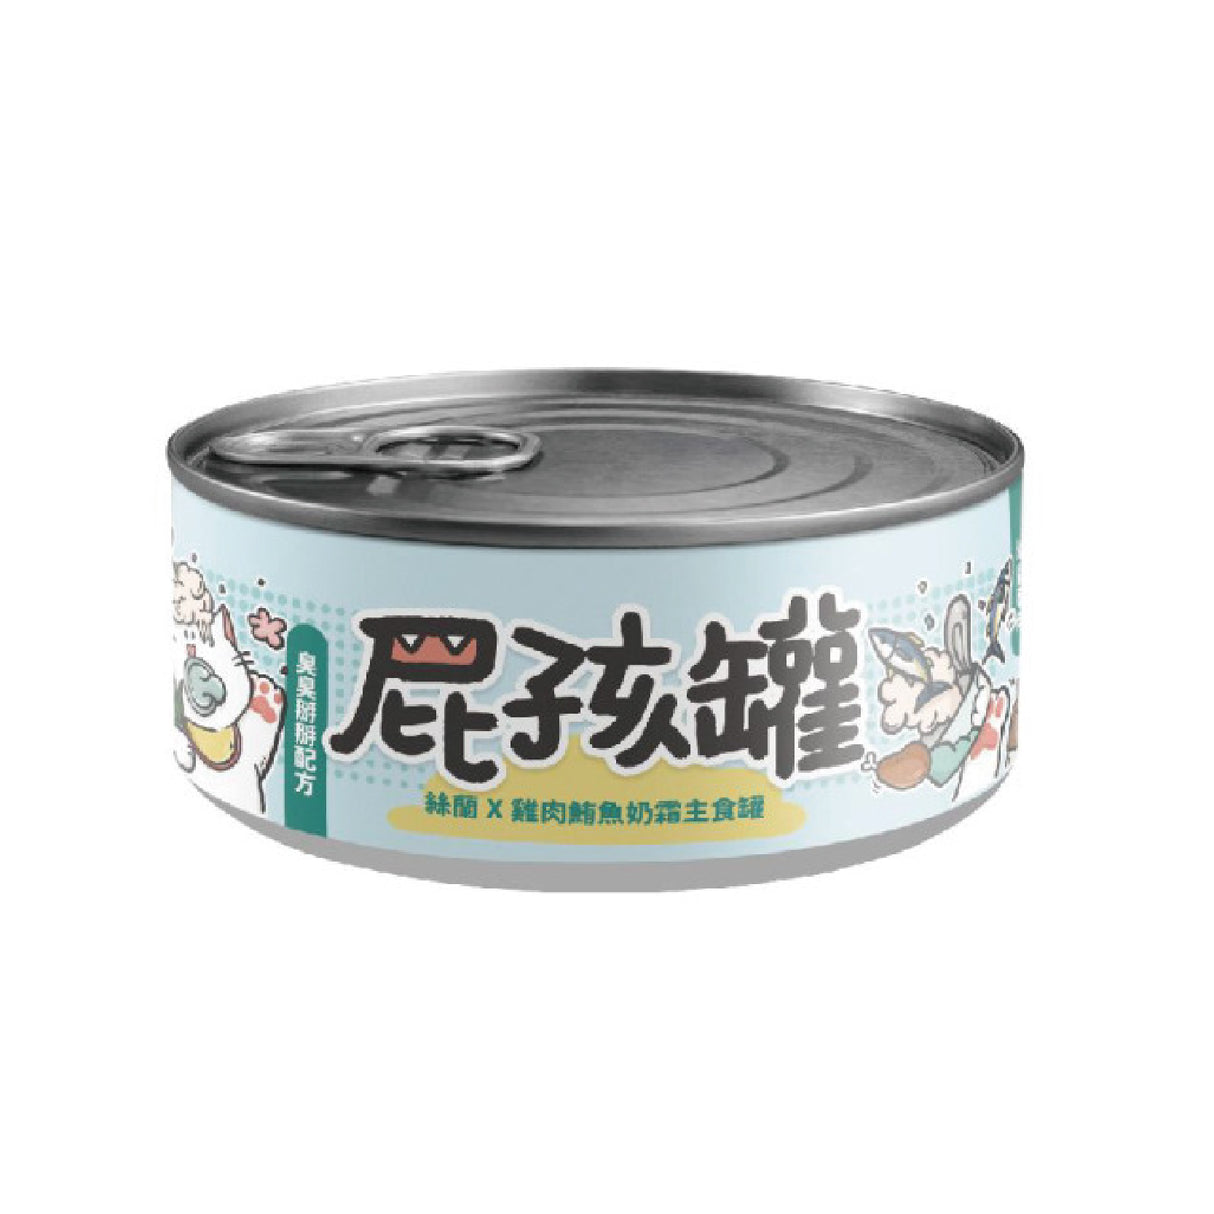 NU4PET陪心寵糧  屁孩罐 幼貓專用 貓主食罐 貓罐 80g 台灣製造